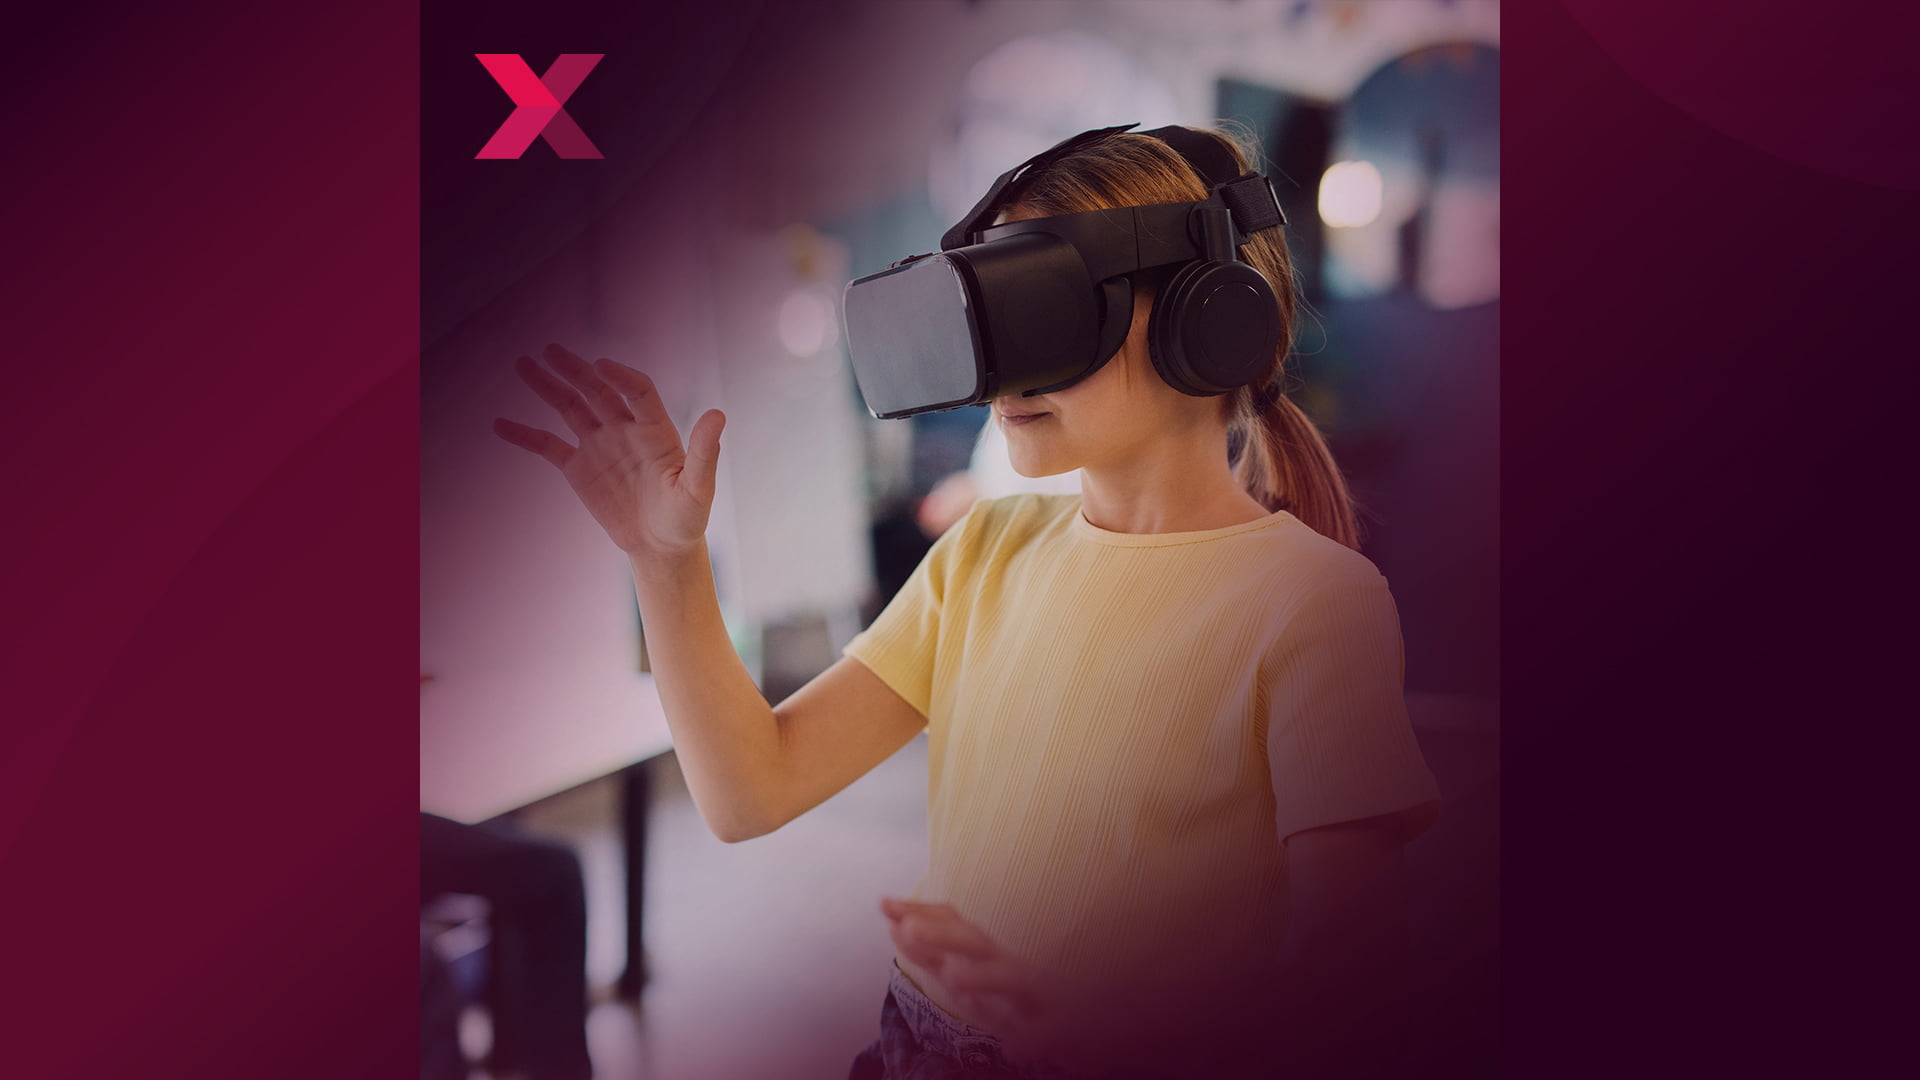 MIXEDCAST #284: Kinder und Virtual Reality – Chancen und Risiken